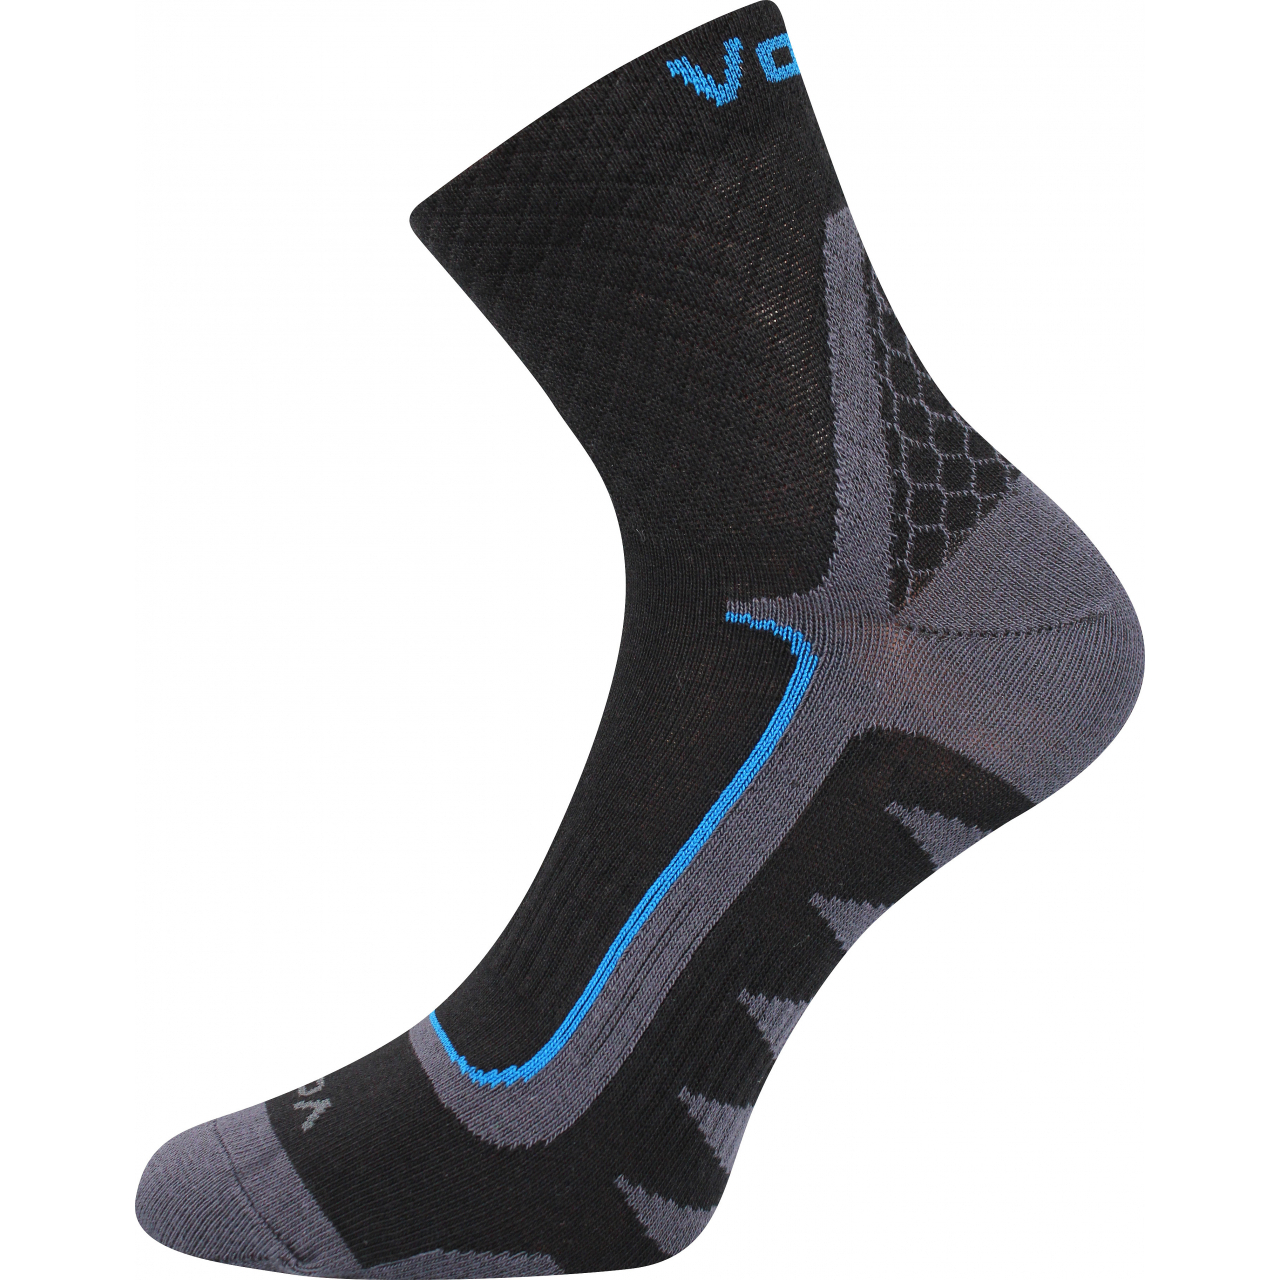 Ponožky sportovní unisex Voxx Kryptox - černé-modré, 39-42